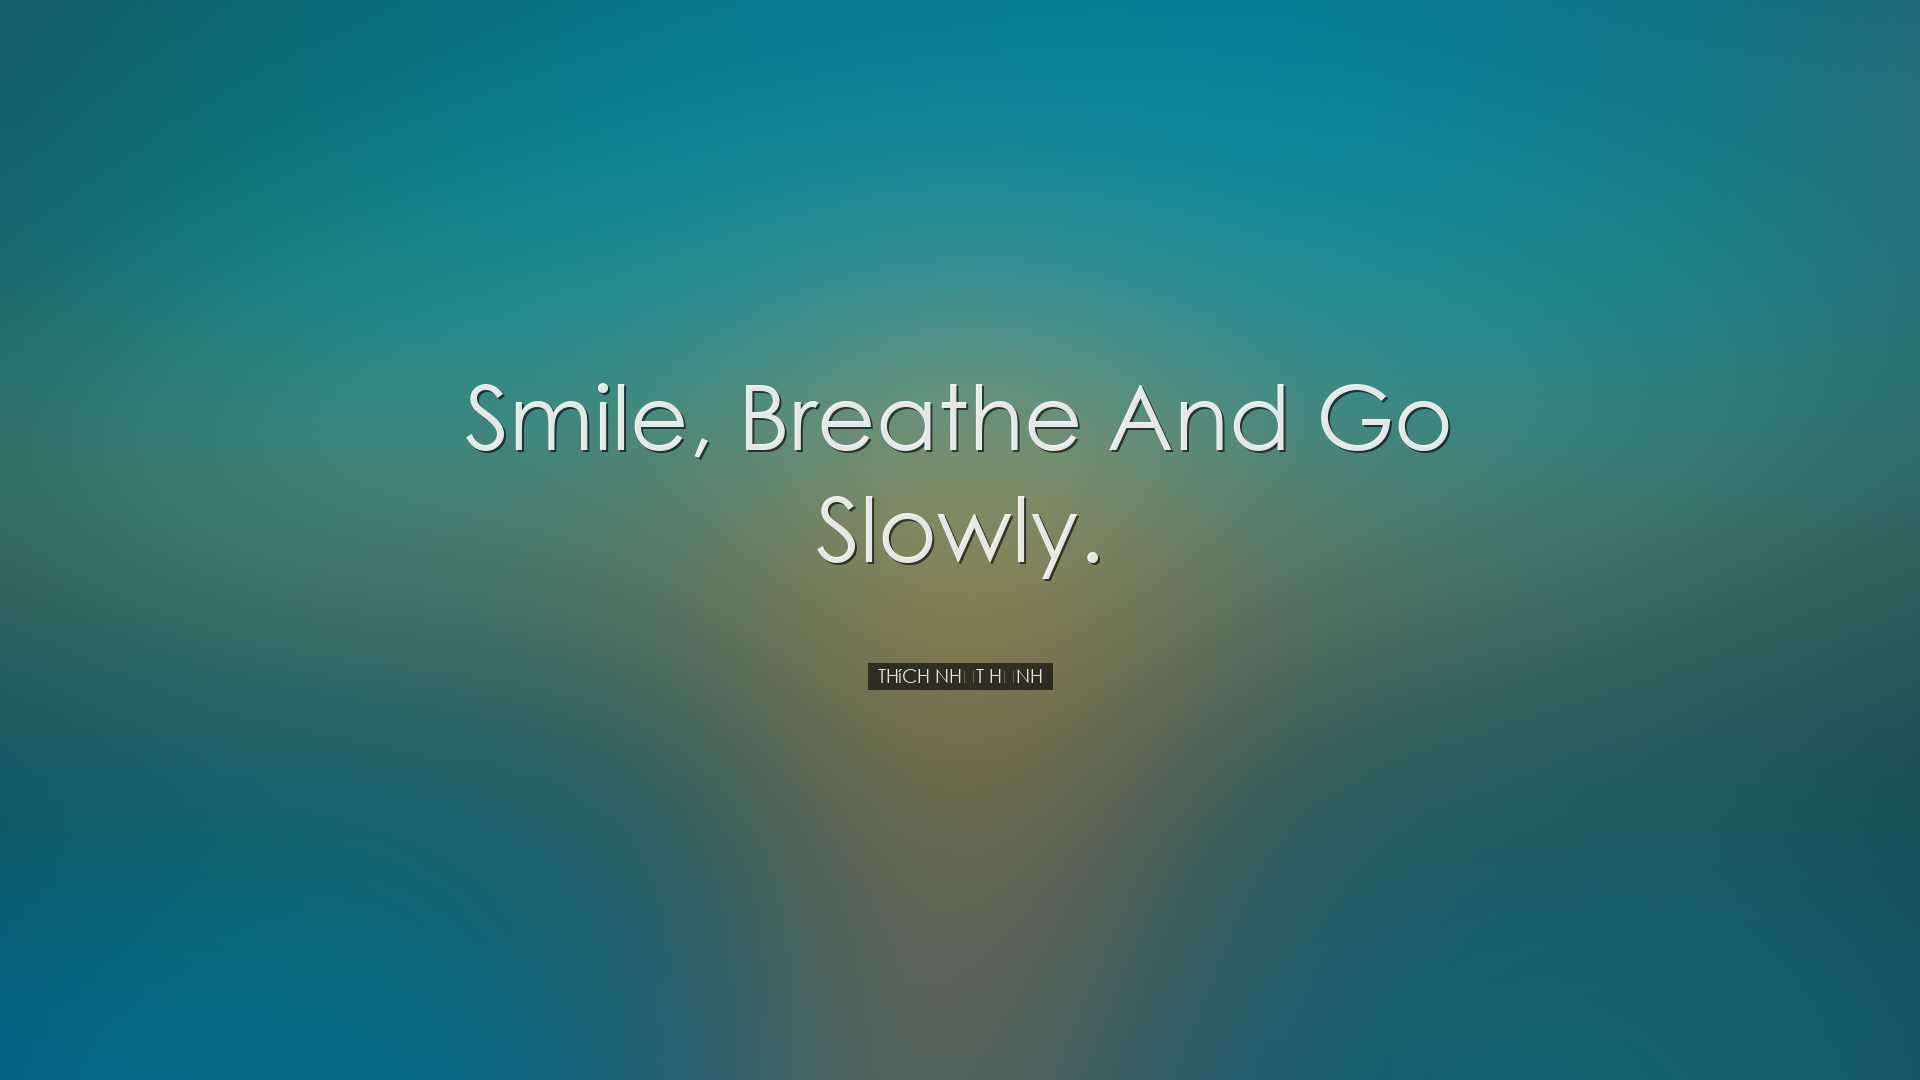 Smile, breathe and go slowly. - Thích Nháº¥t Hạnh